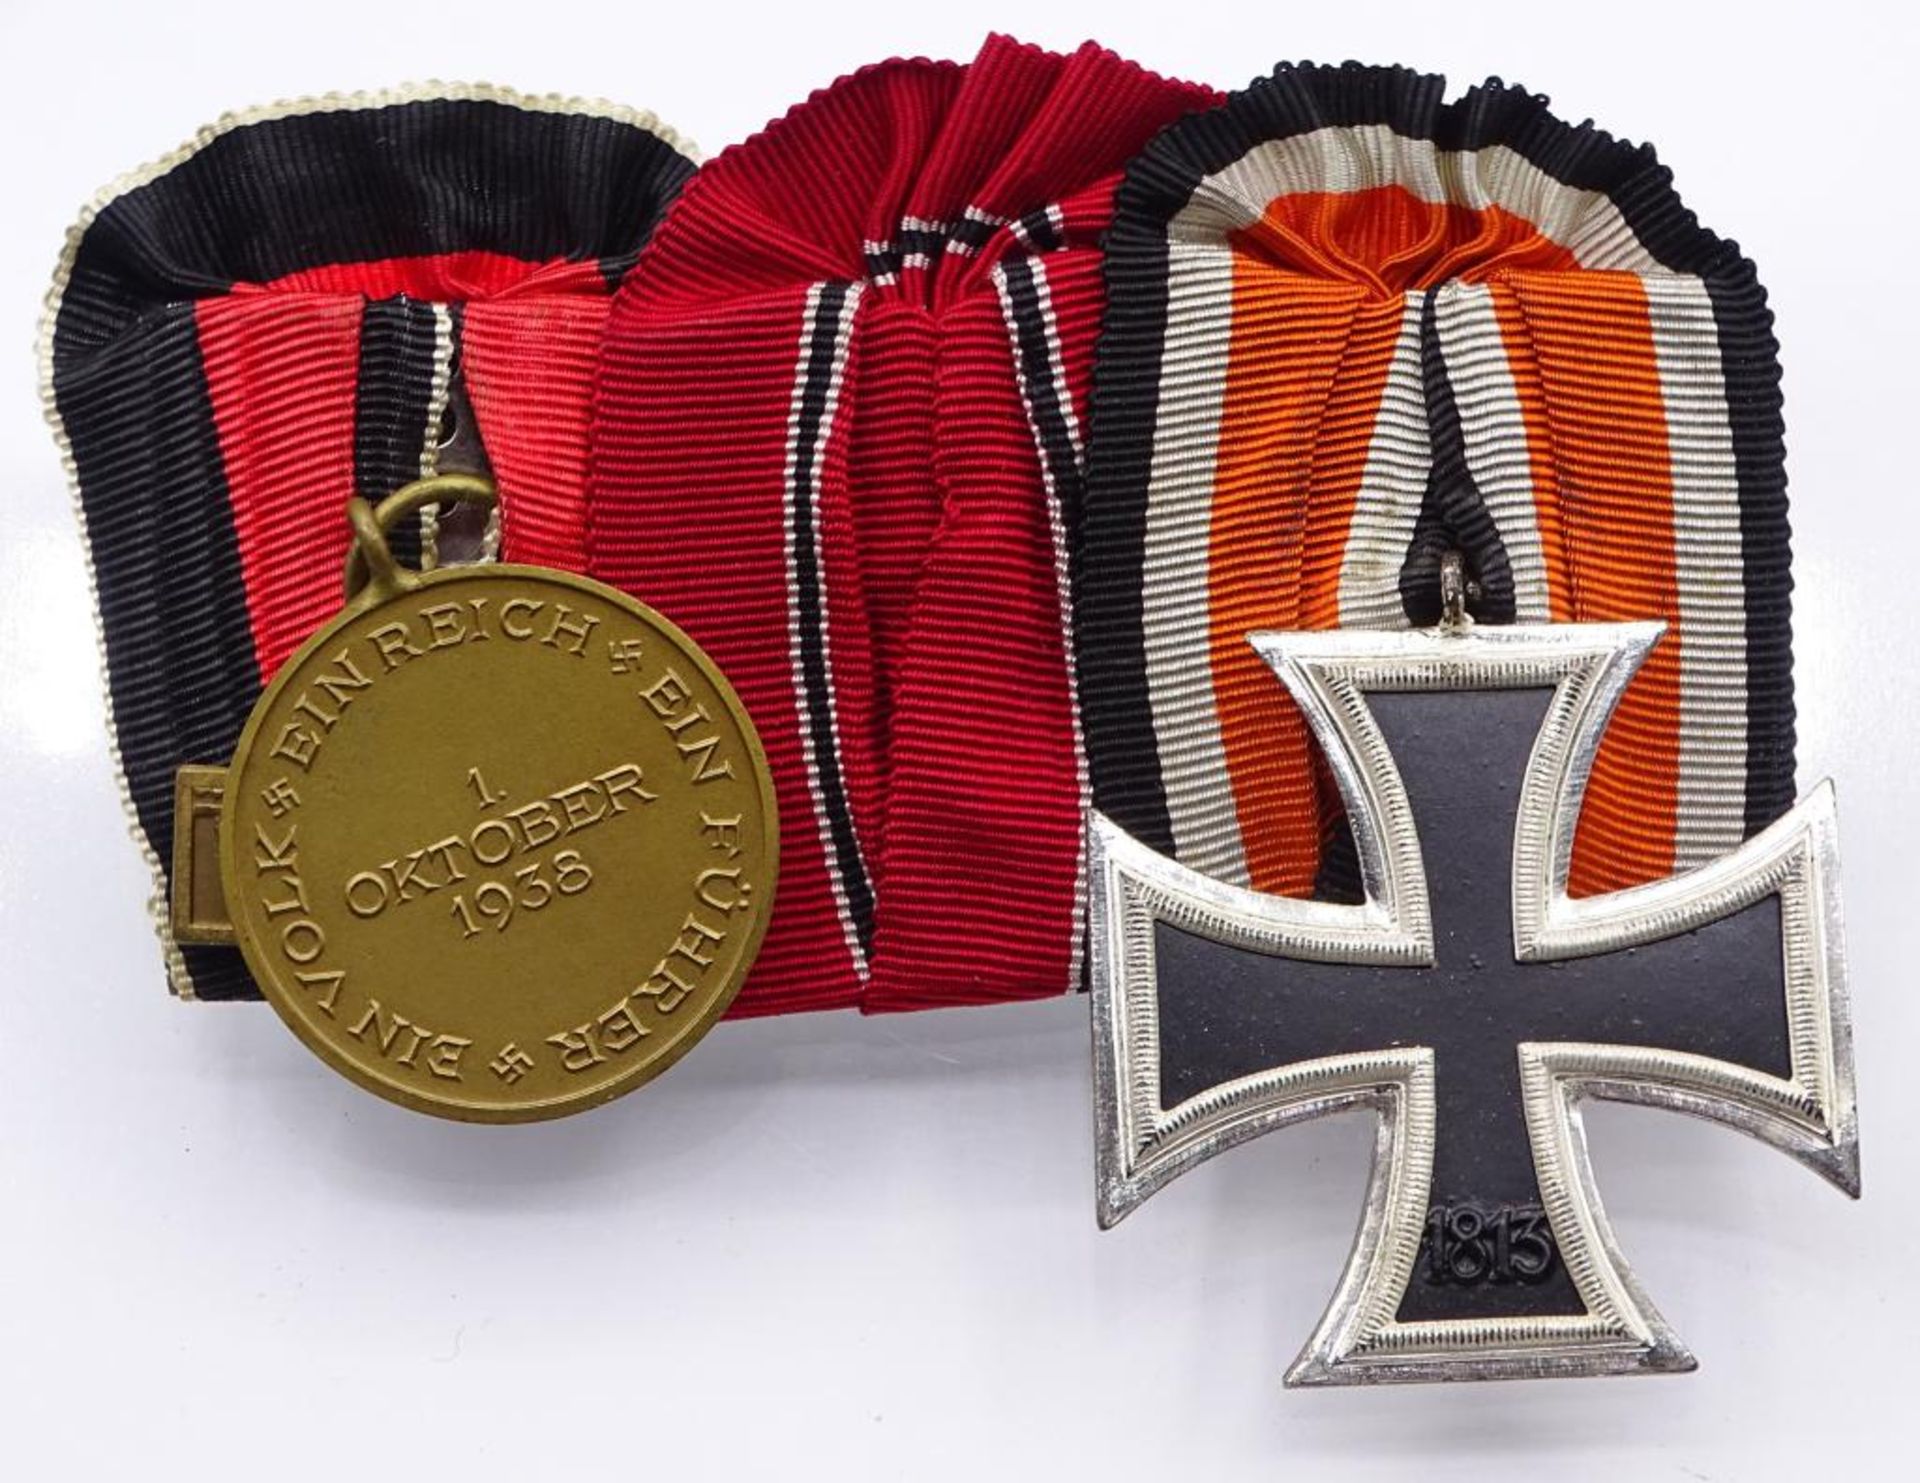 Ordensspange mit EK 2.WK,2.Klasse, Medaille 1.Oktober 1938- - -22.61 % buyer's premium on the hammer - Bild 3 aus 3